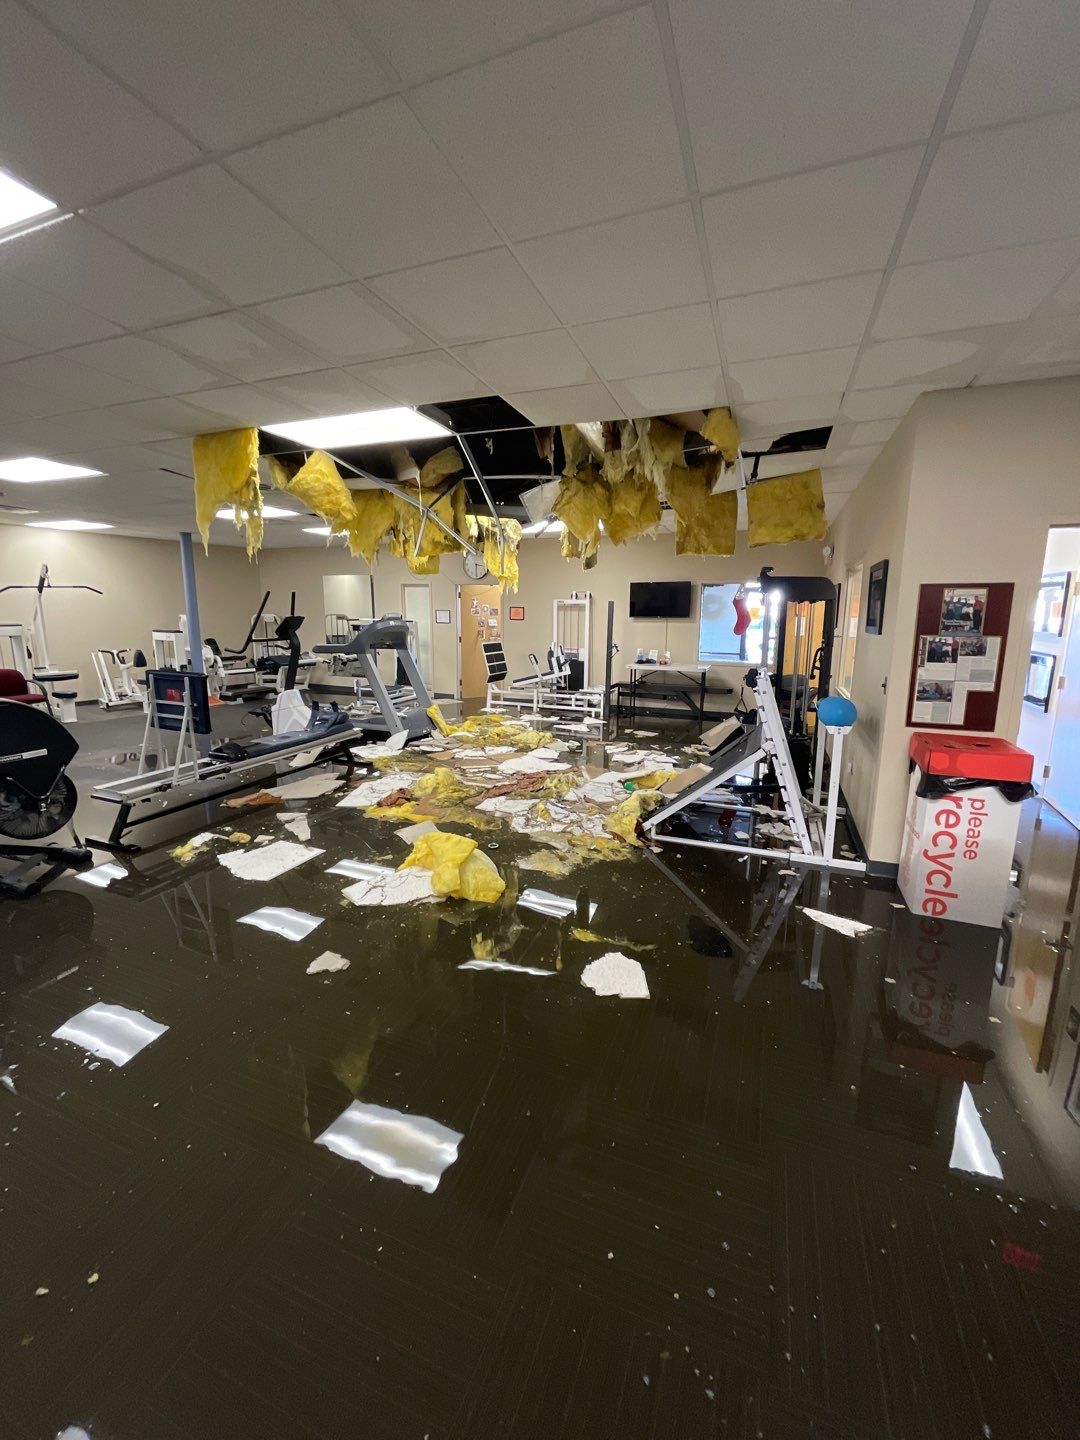 flooded rehab center